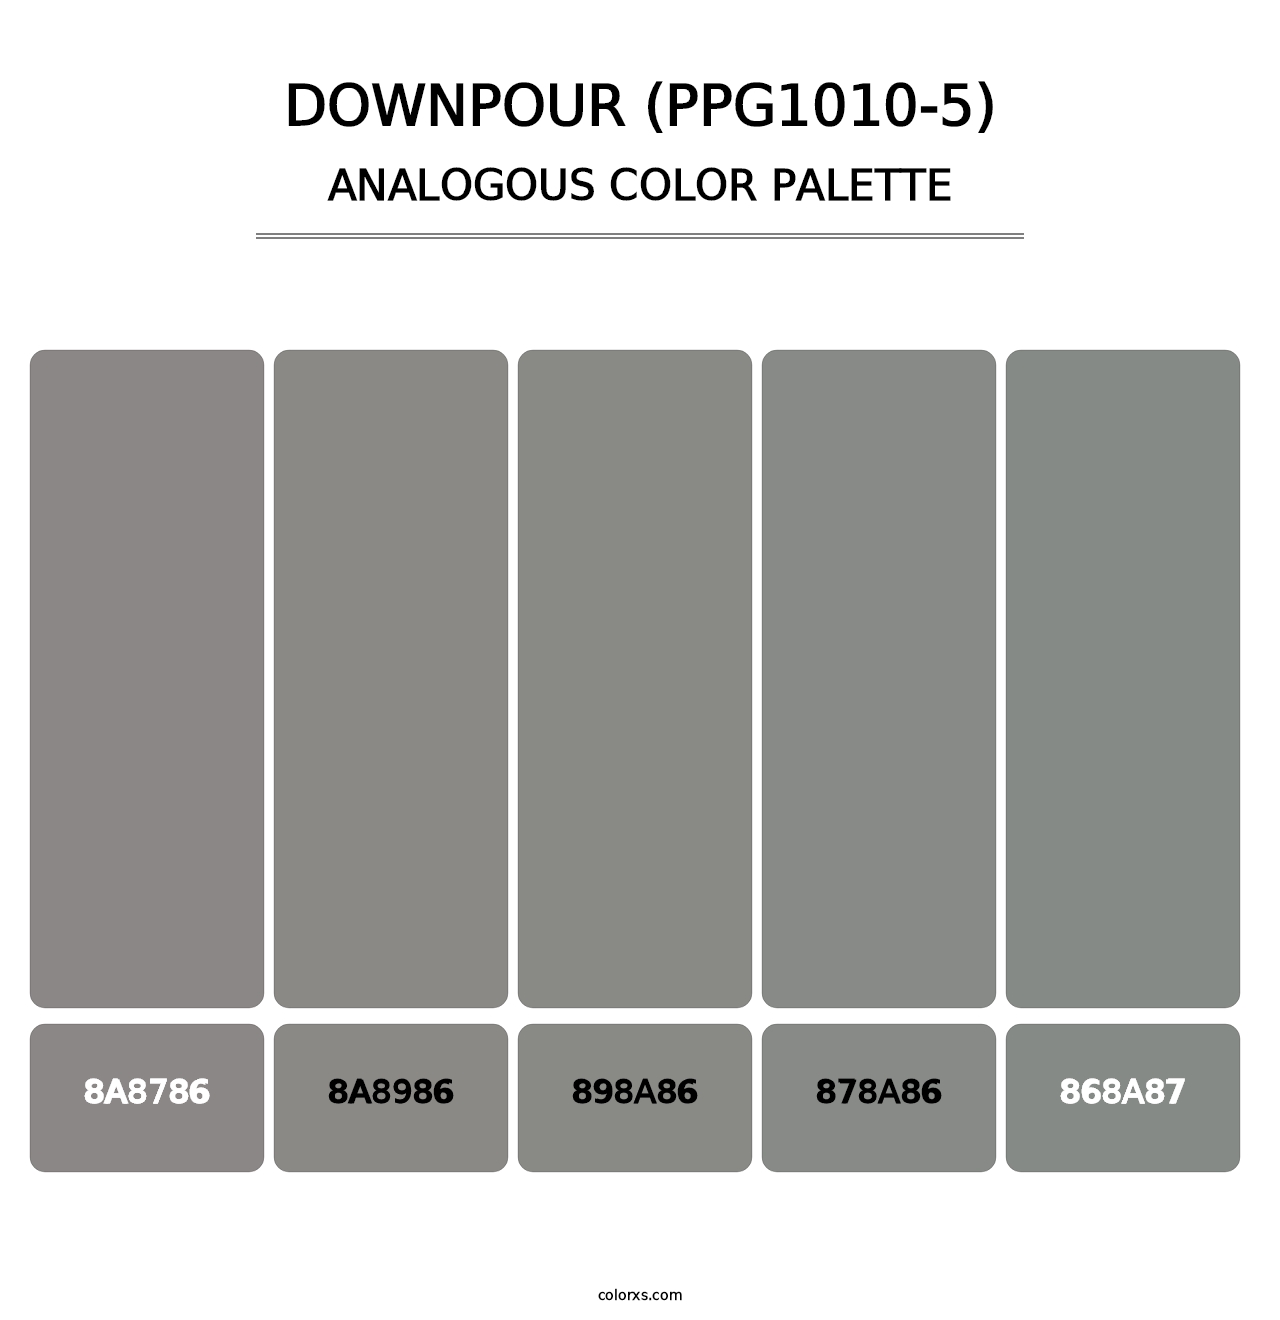 Downpour (PPG1010-5) - Analogous Color Palette